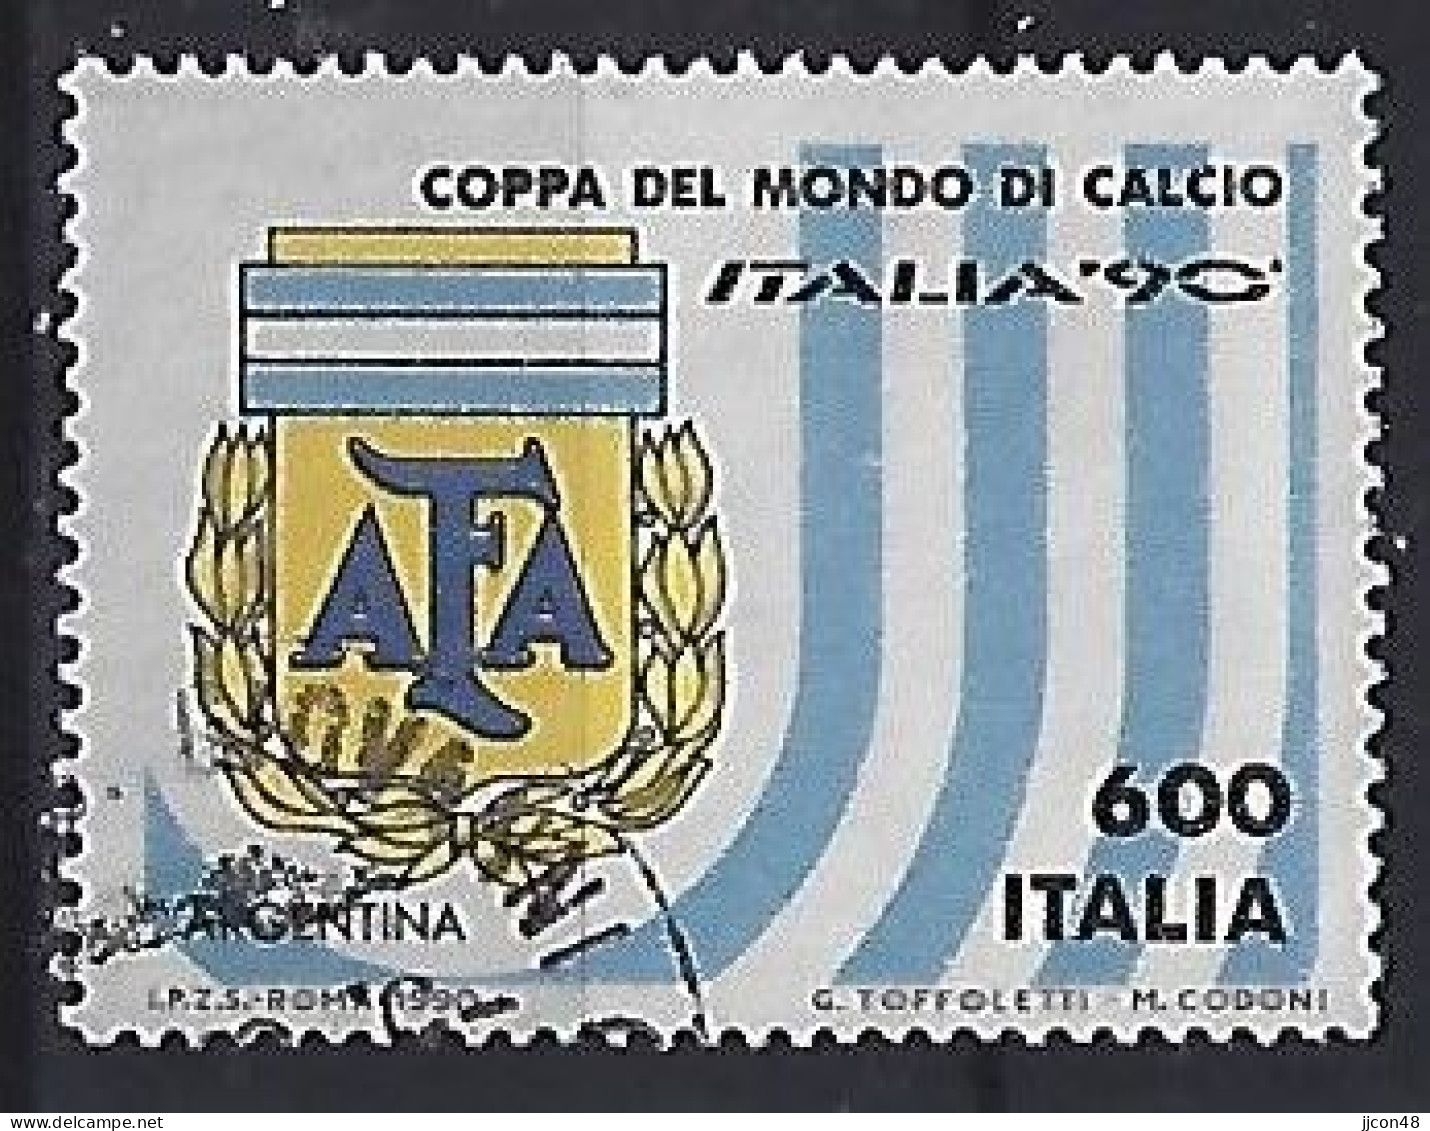 Italy 1990  Fussball-Weltmeisterschaft  (o) Mi.2111 - 1981-90: Oblitérés